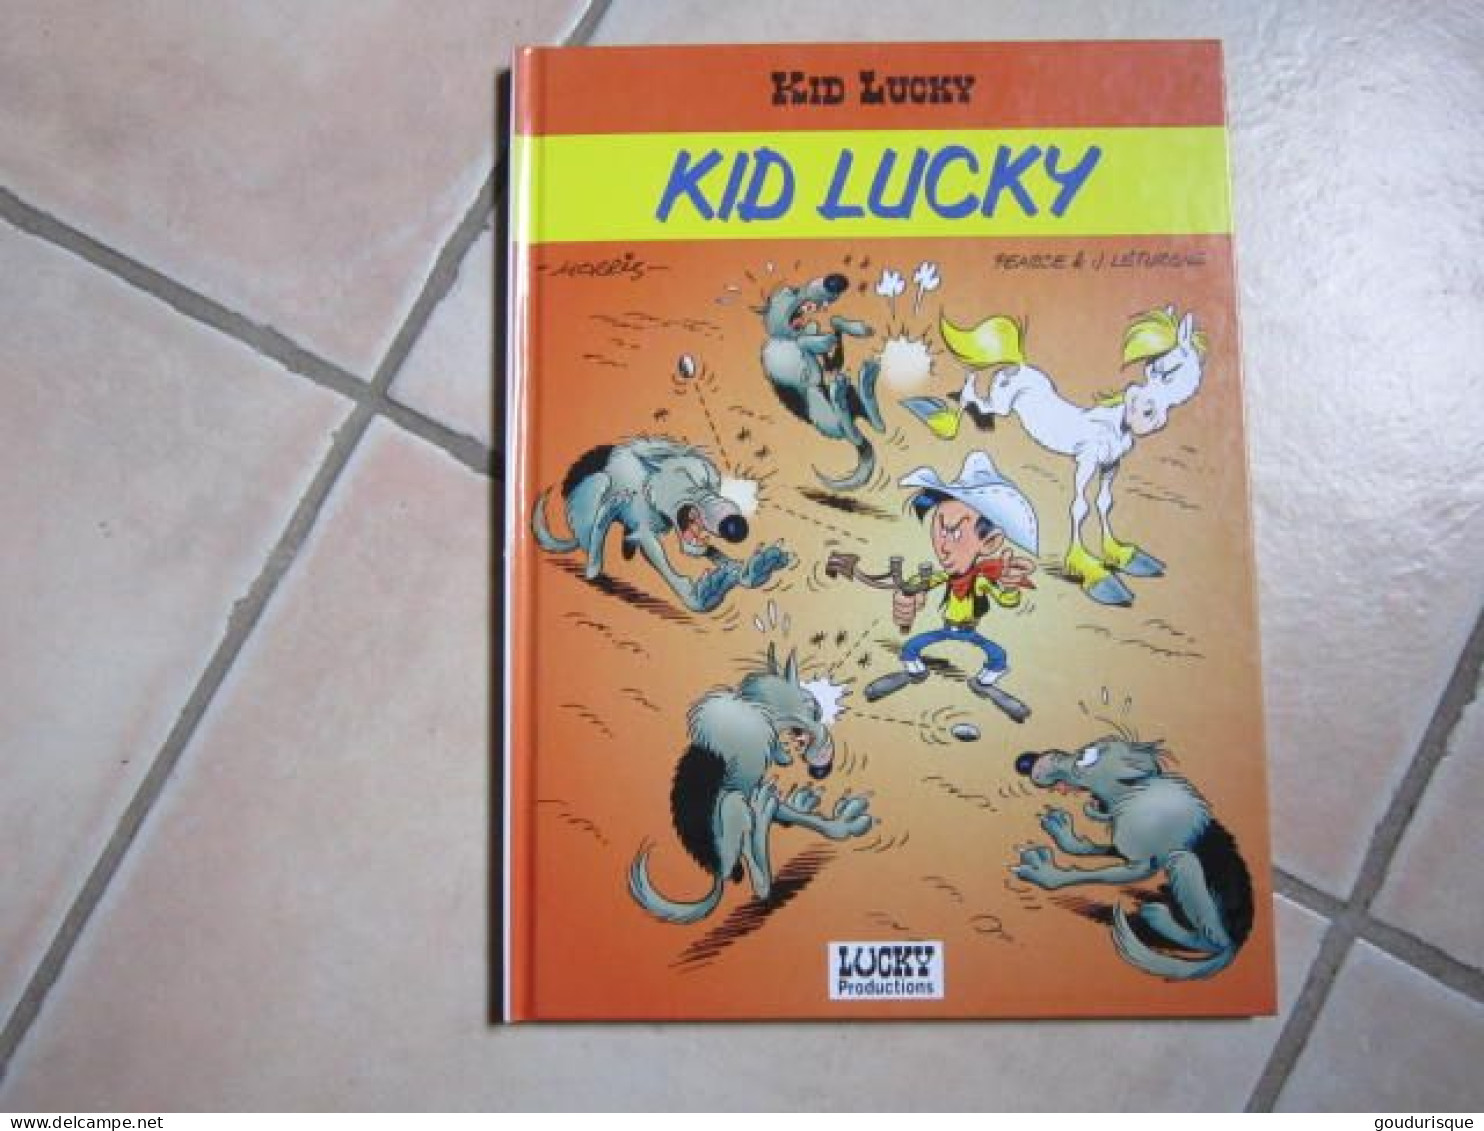 EO LUCKY LUKE N°64  KID LUCKY   MORRIS - Lucky Luke